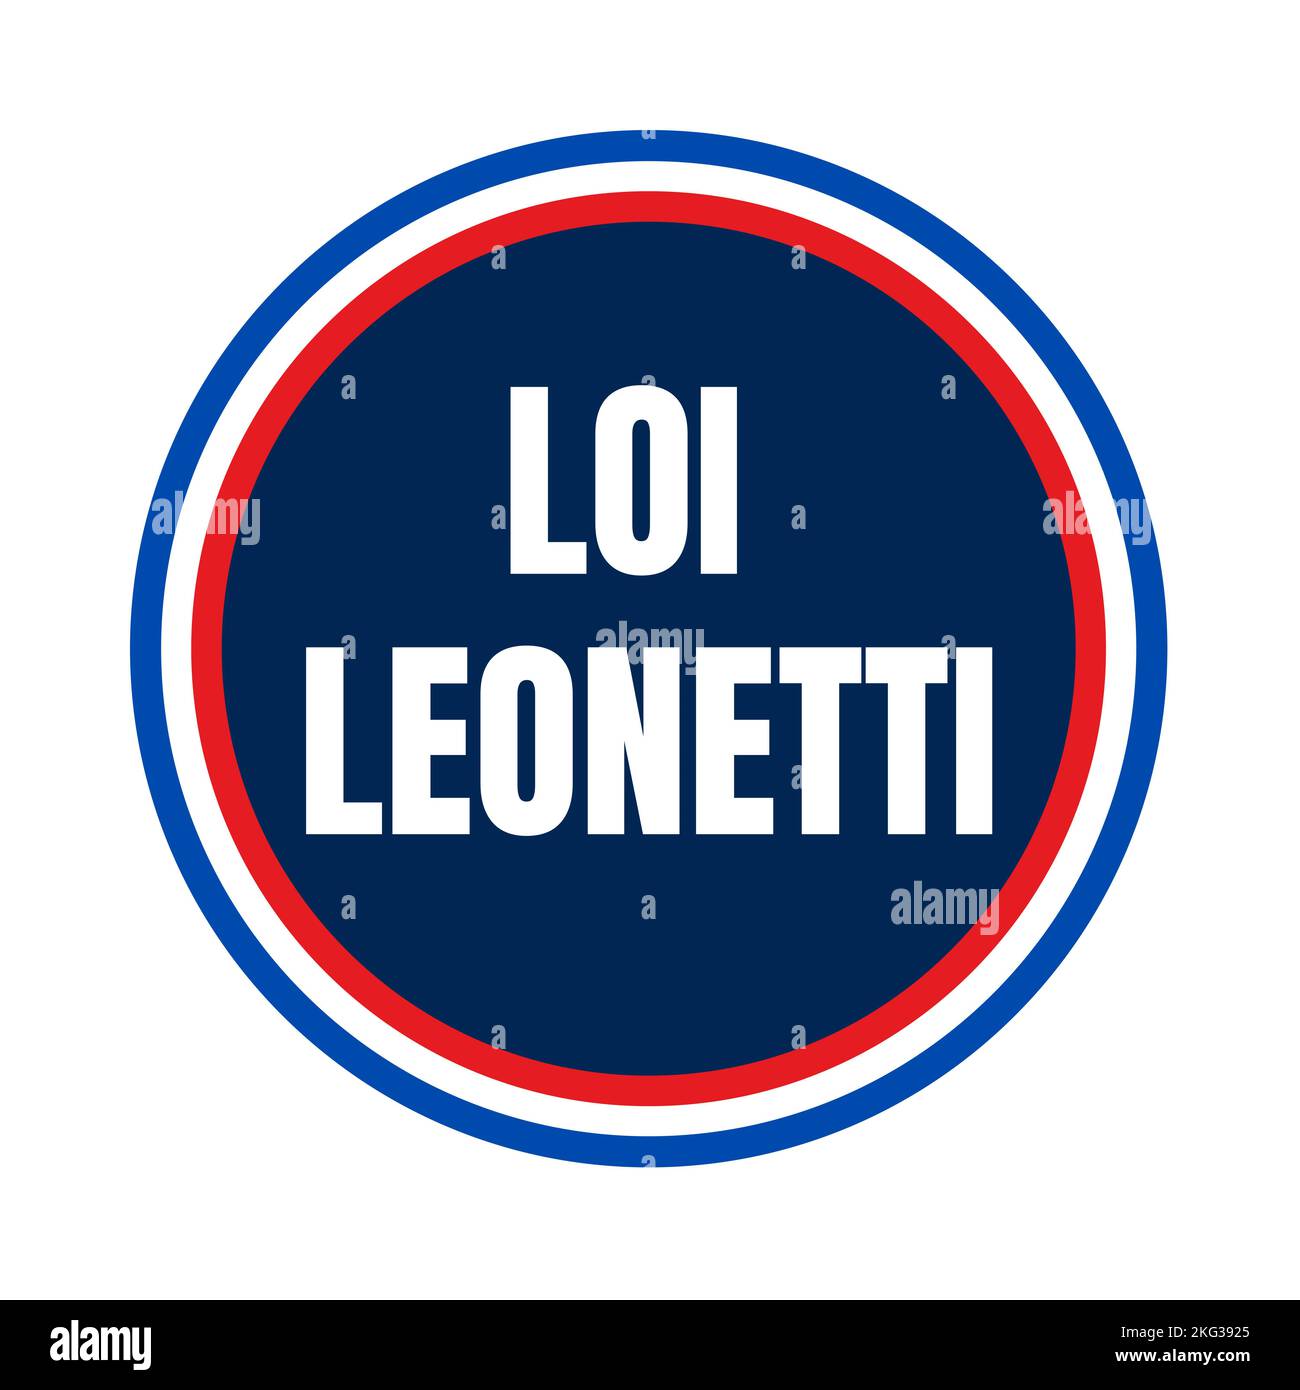 Le symbole de loi Leonetti en France a appelé loi Leonetti en langue française Banque D'Images